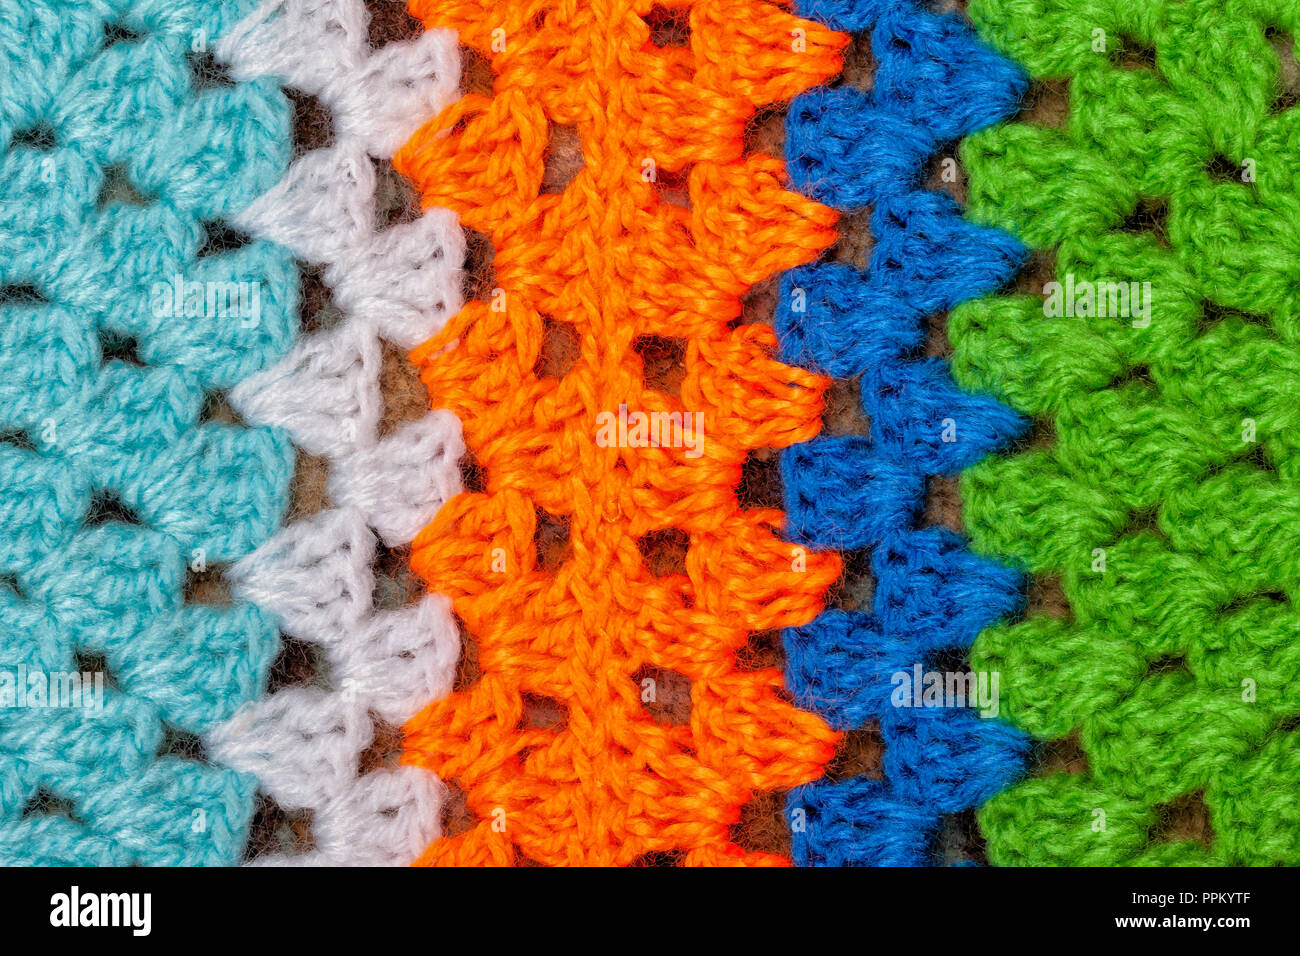 Dettaglio di una coperta di lana fatta con crochet Foto stock - Alamy